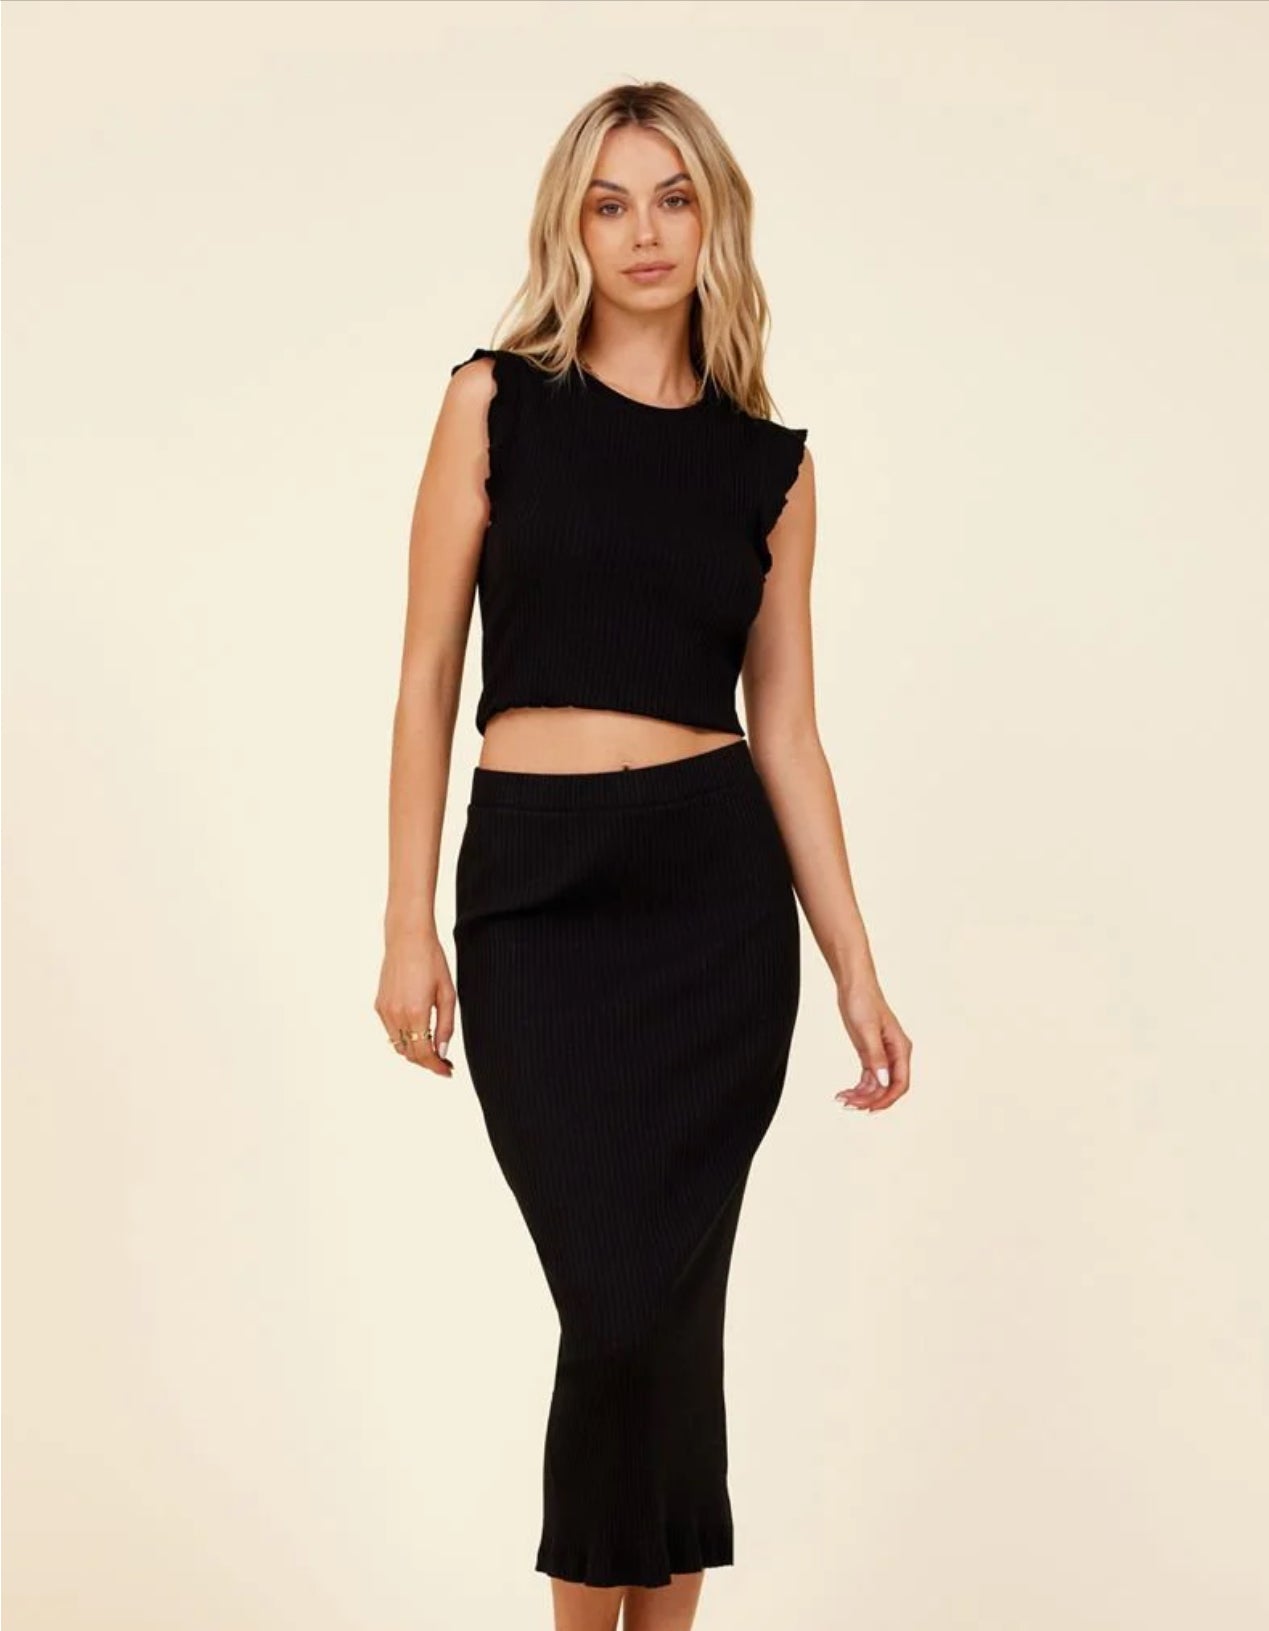 
  
  Slim Skirt / Dress
  
